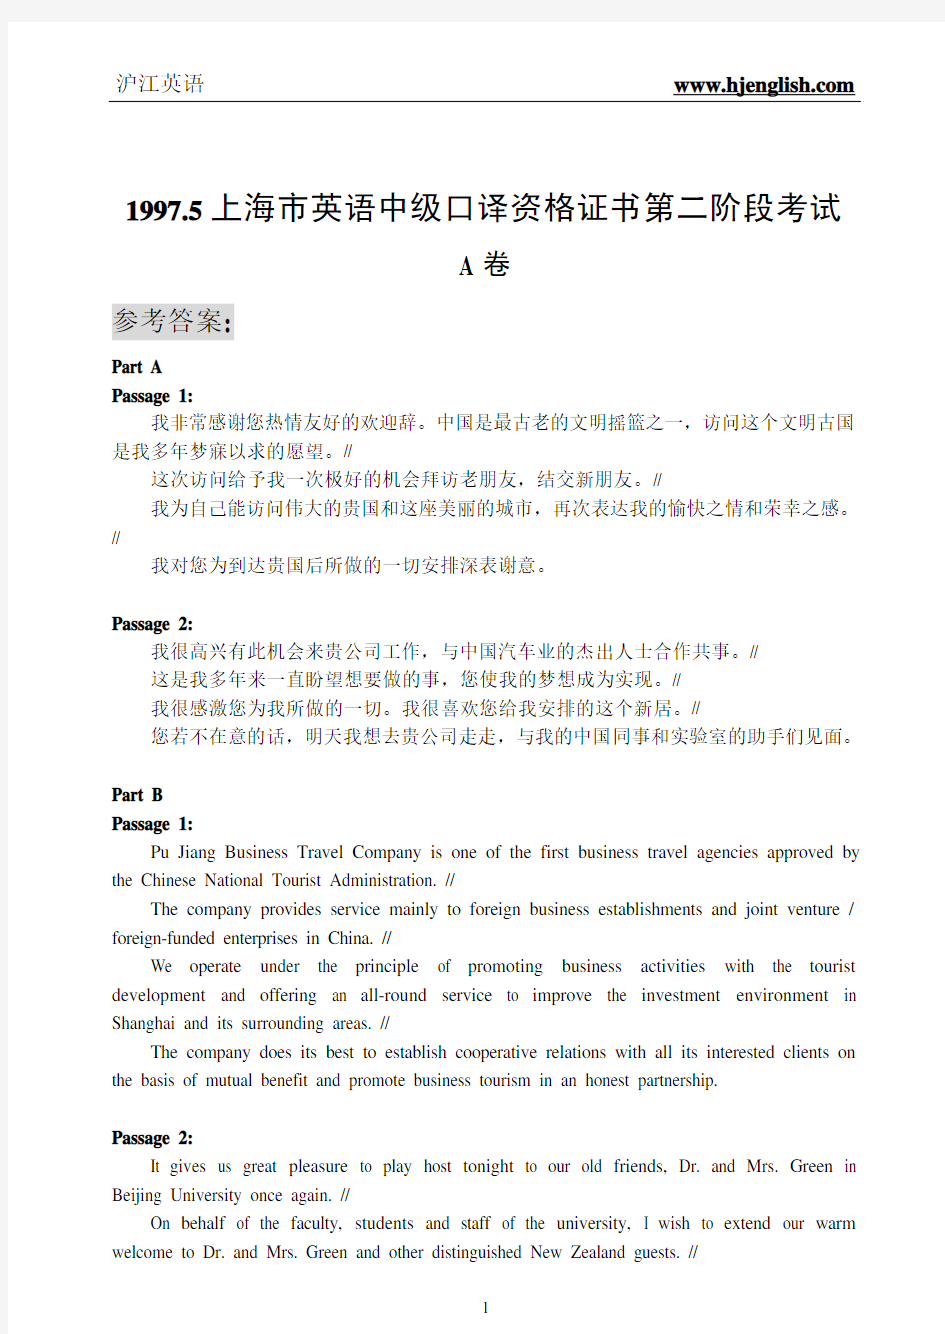 1997_5上海市英语中级口译资格证书第二阶段考试[参考答案]